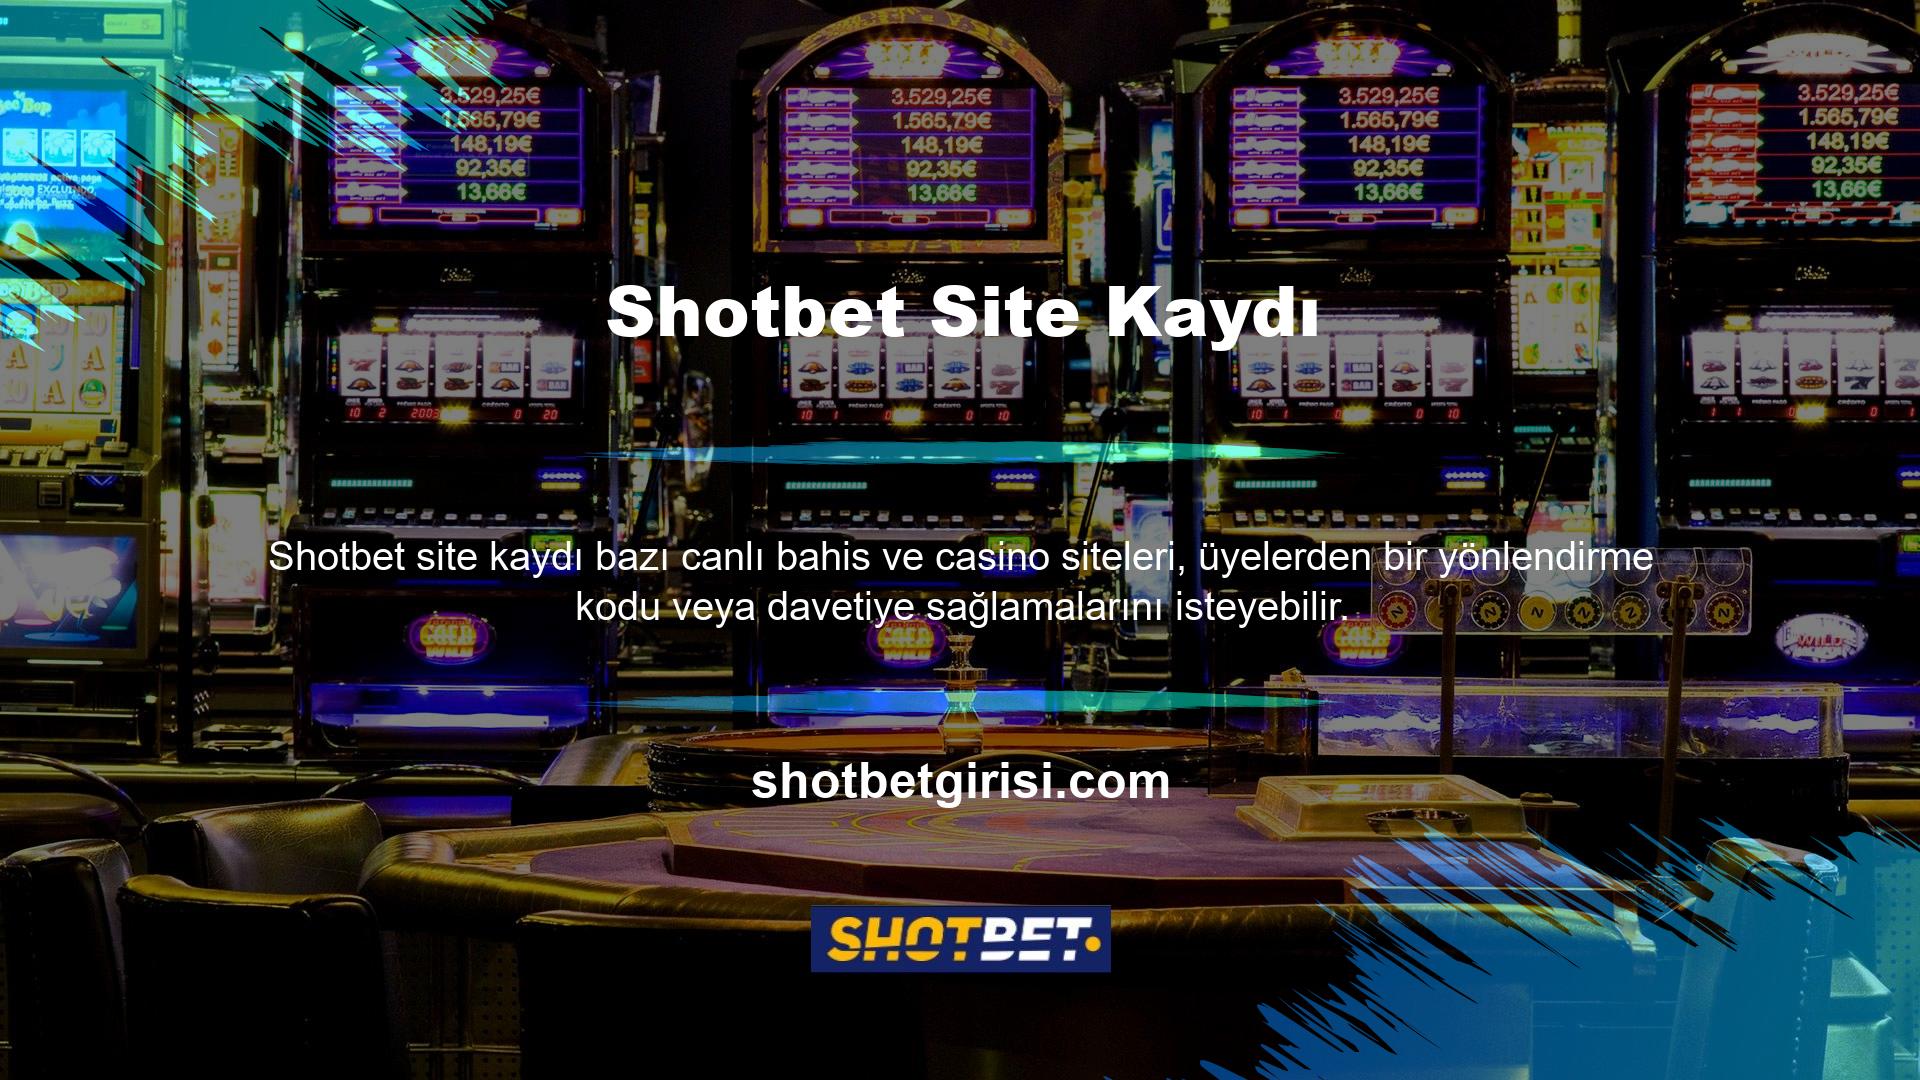 Ancak Shotbet Canlı Bahis ve Casino web sitesine kayıt olduğunuzda bu durum geçerli değildir